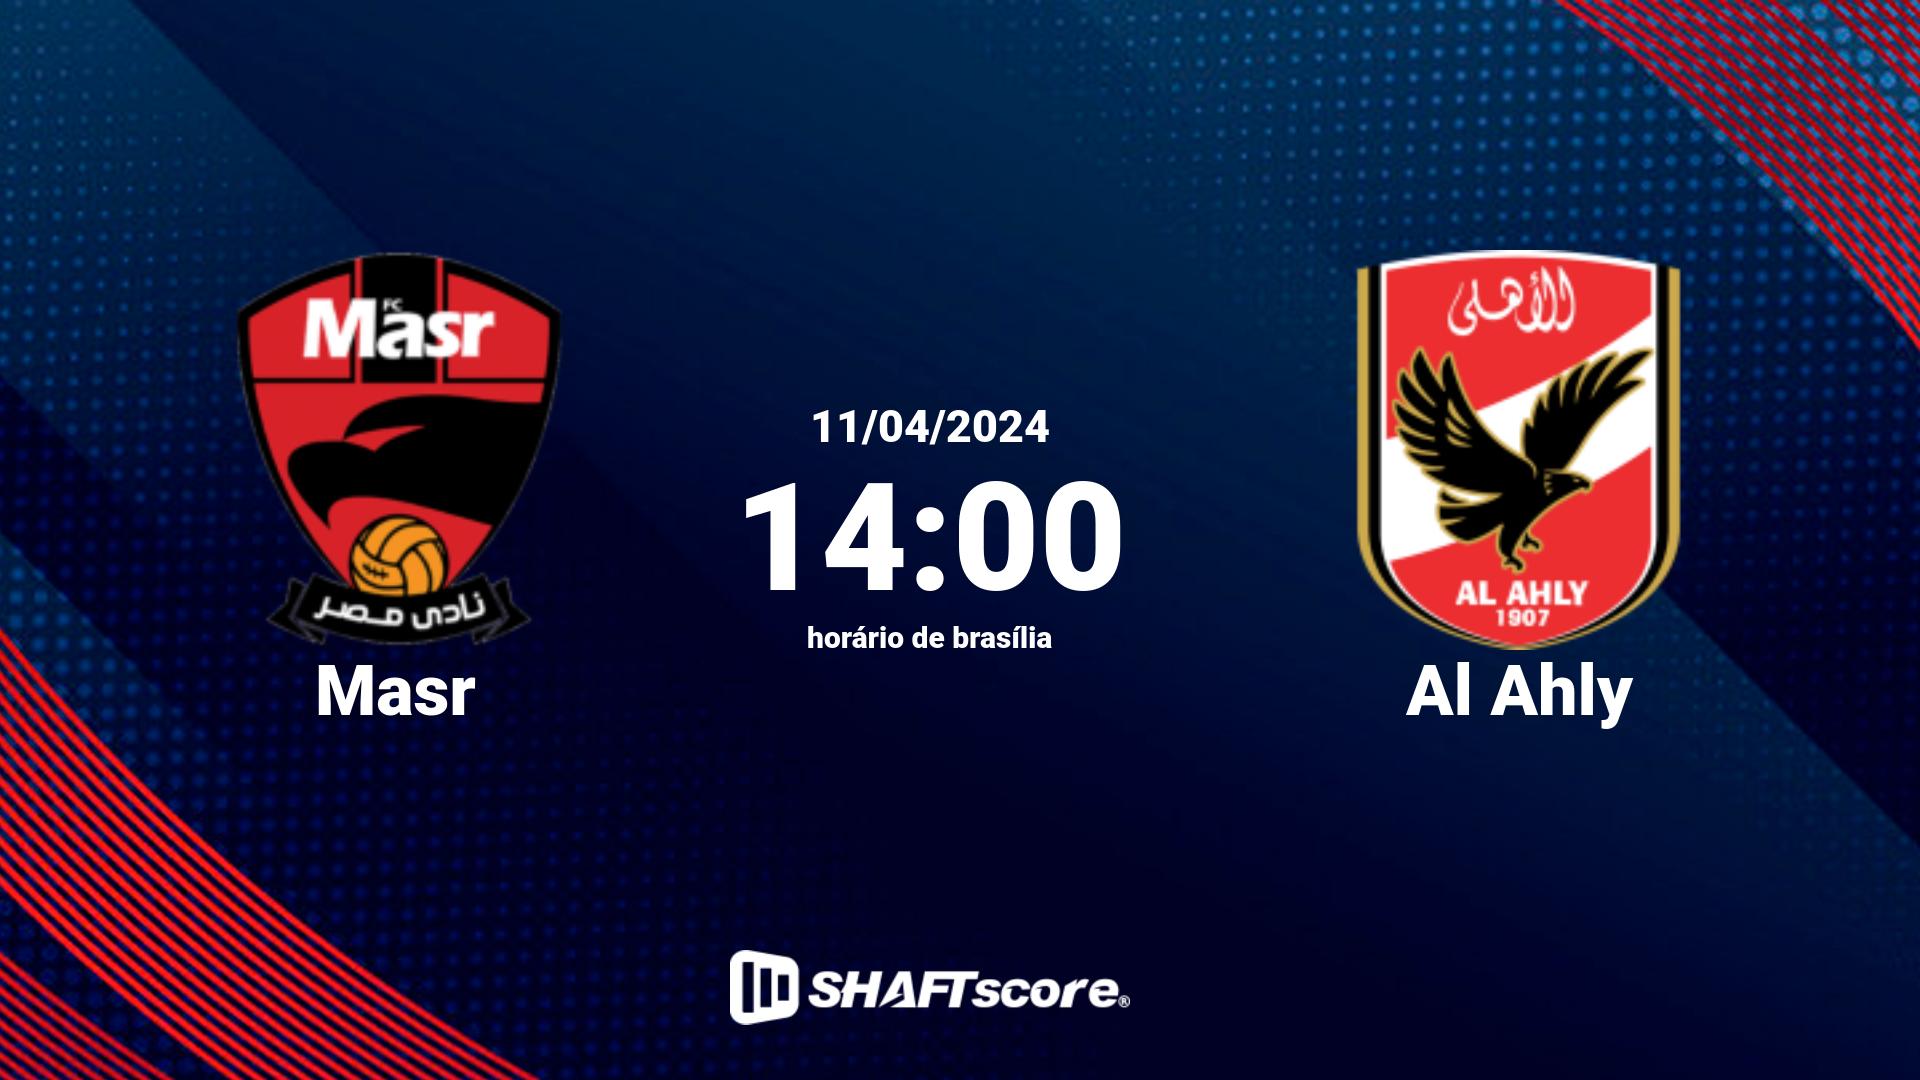 Estatísticas do jogo Masr vs Al Ahly 11.04 14:00